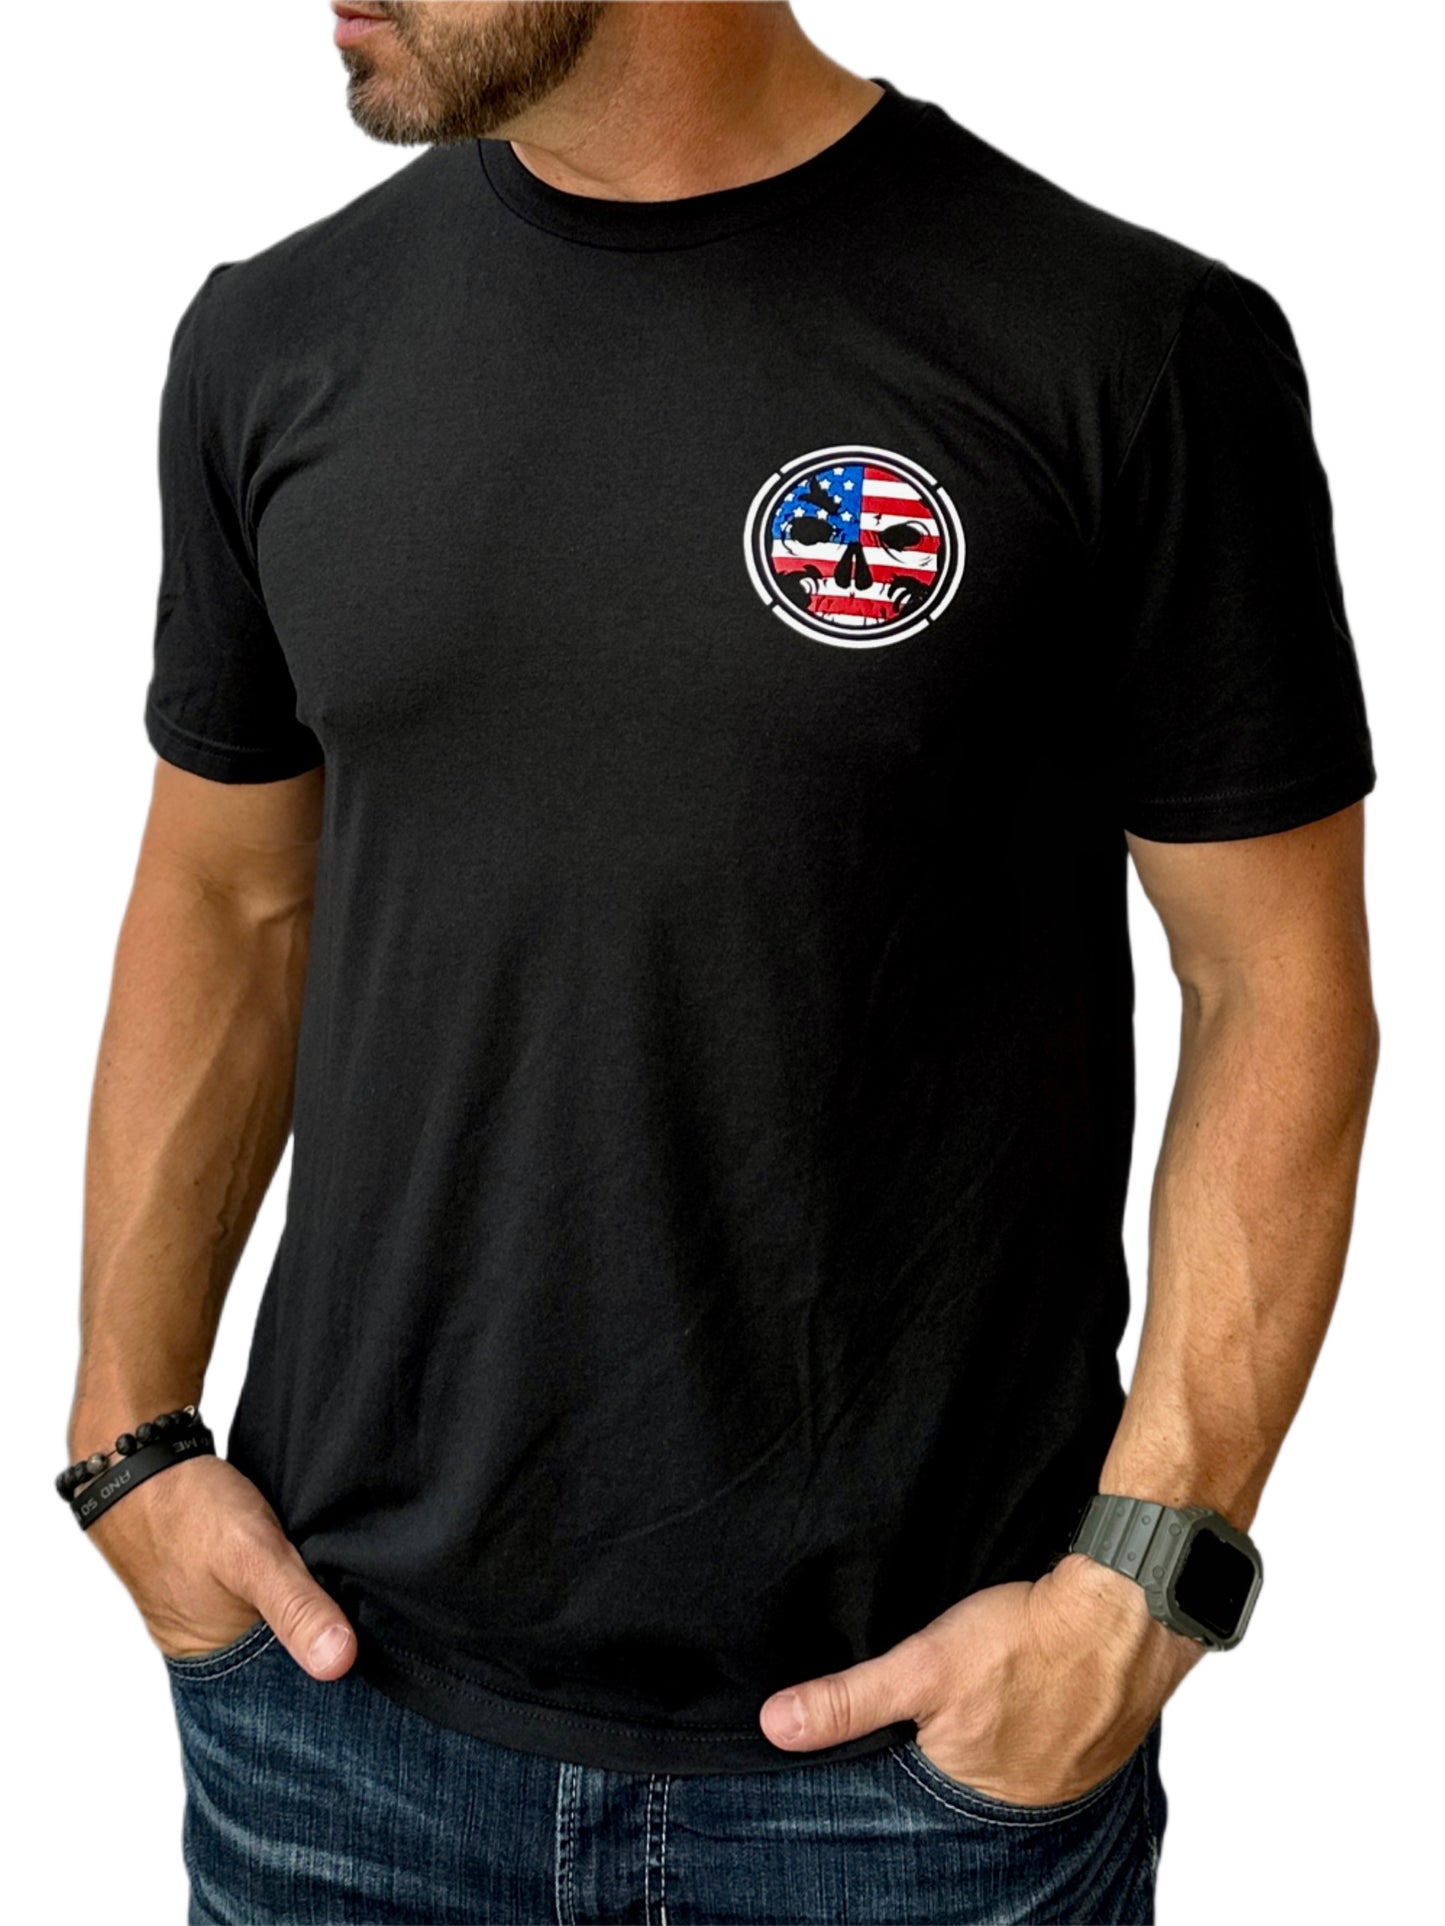 NEW! Men's Light-Weight Black T-Shirt - Patriotic Logo